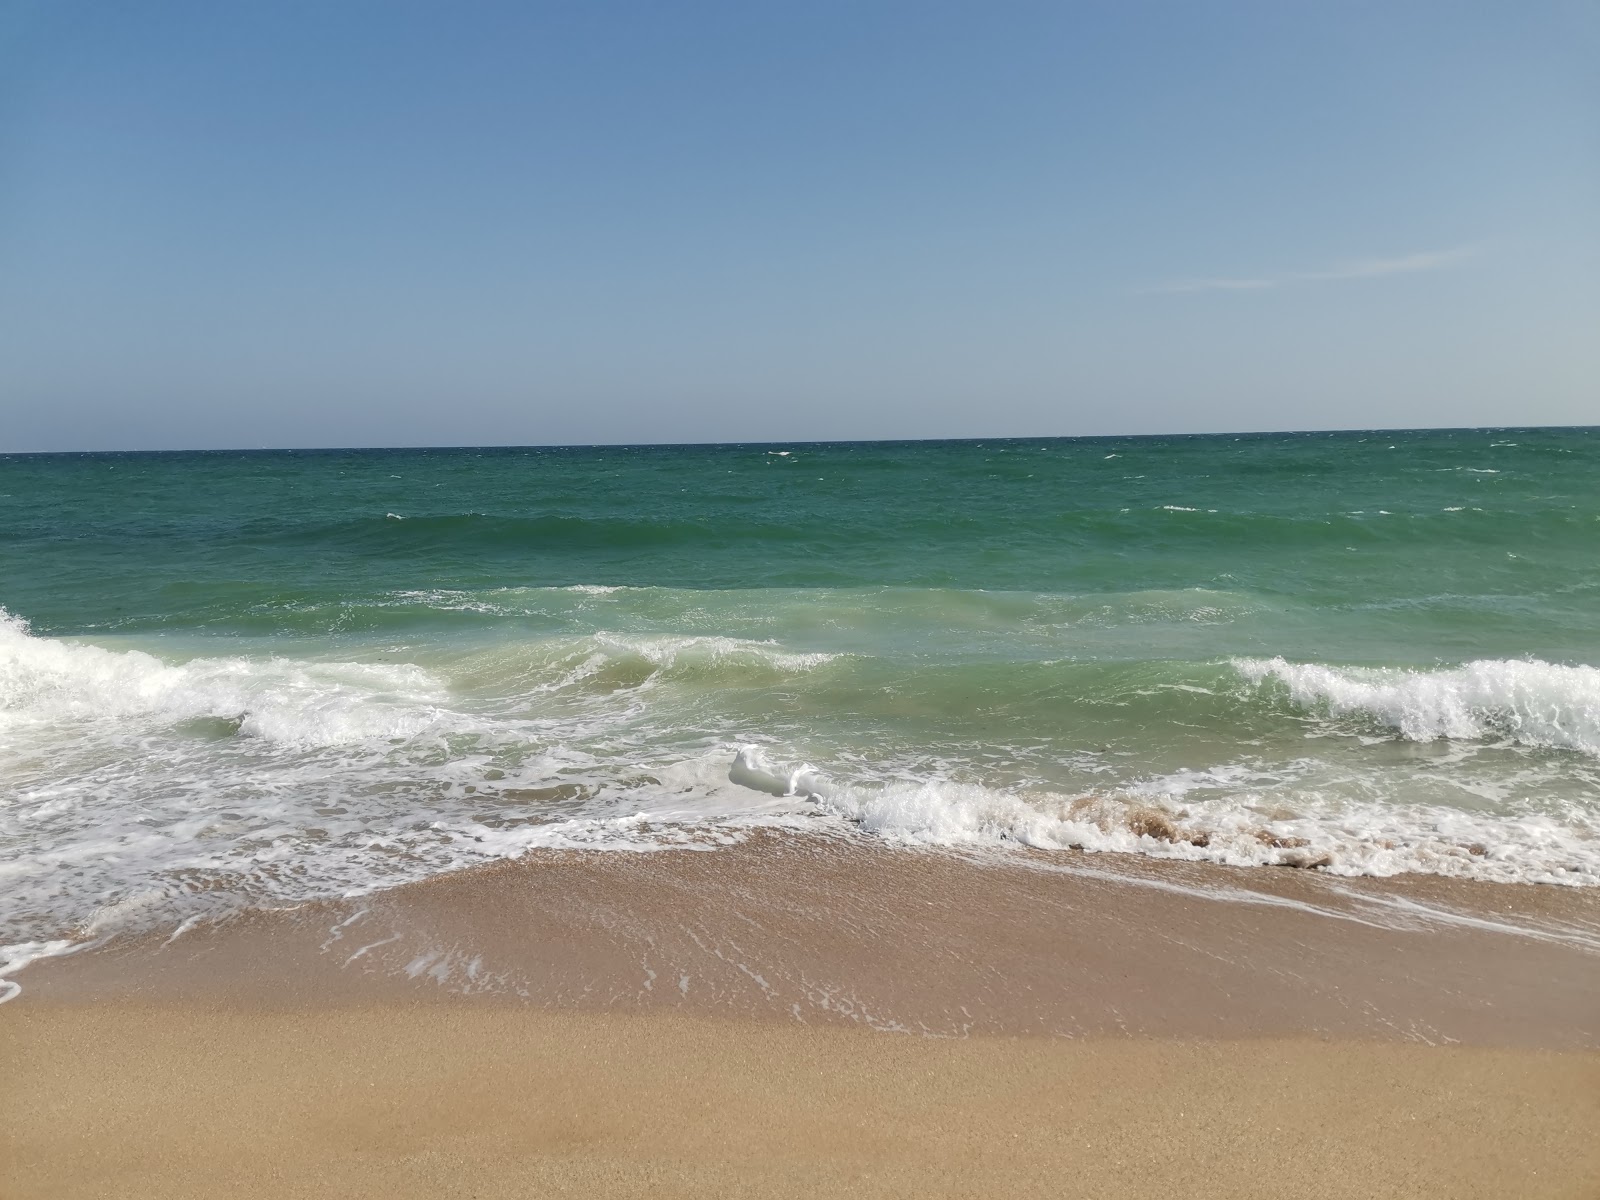 Fotografie cu Boeme beach - locul popular printre cunoscătorii de relaxare